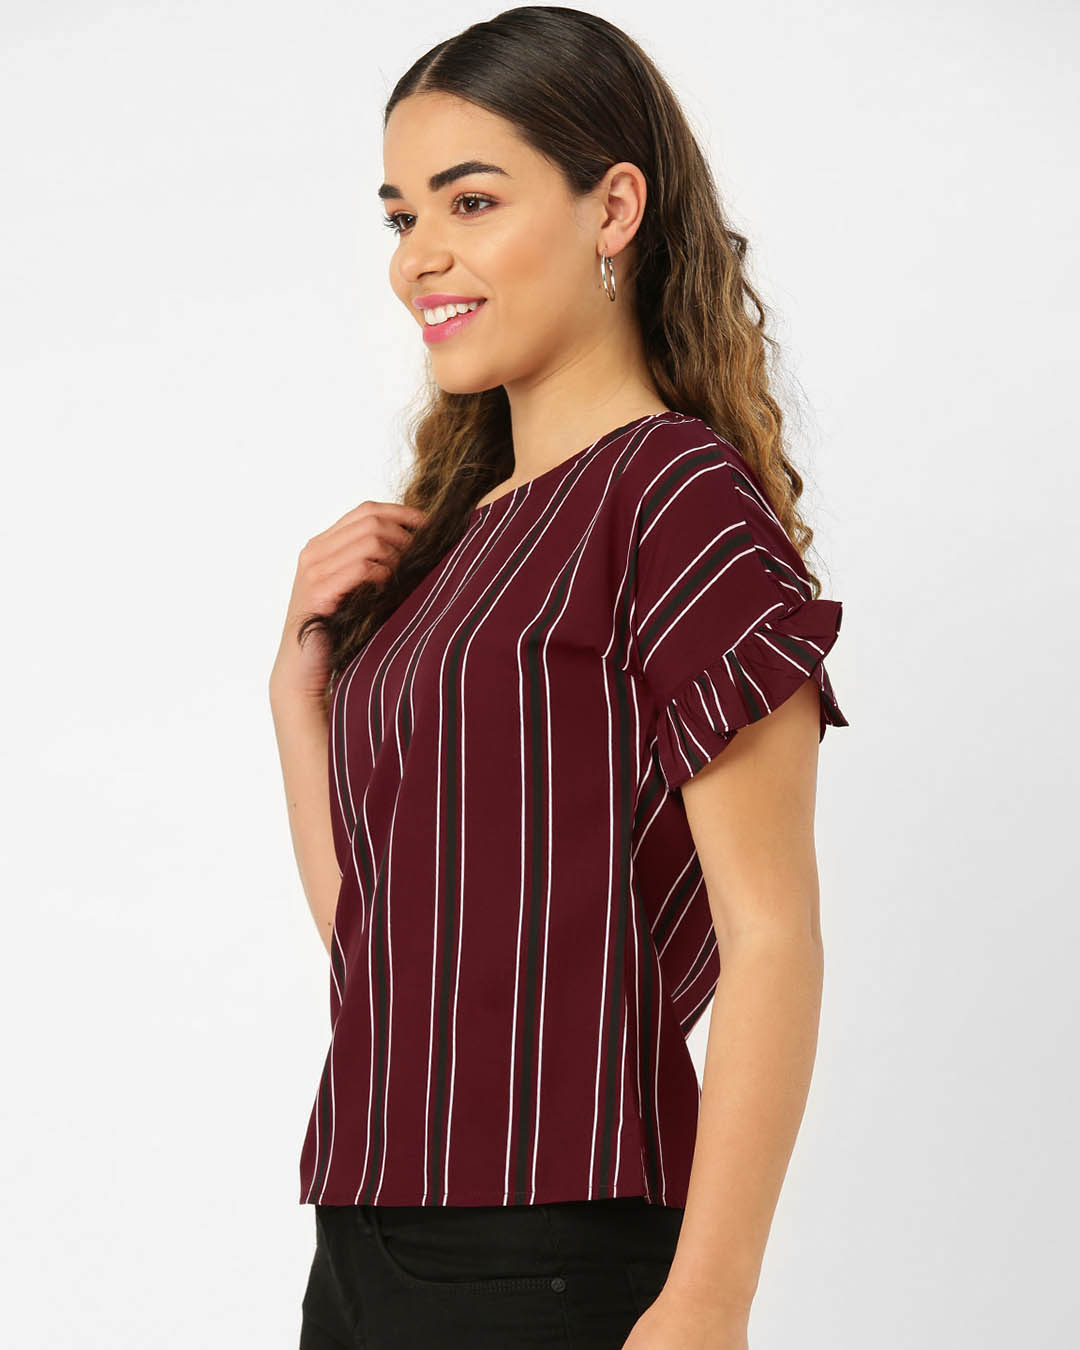 Shop Women's Maroon & Black Striped Top-Back